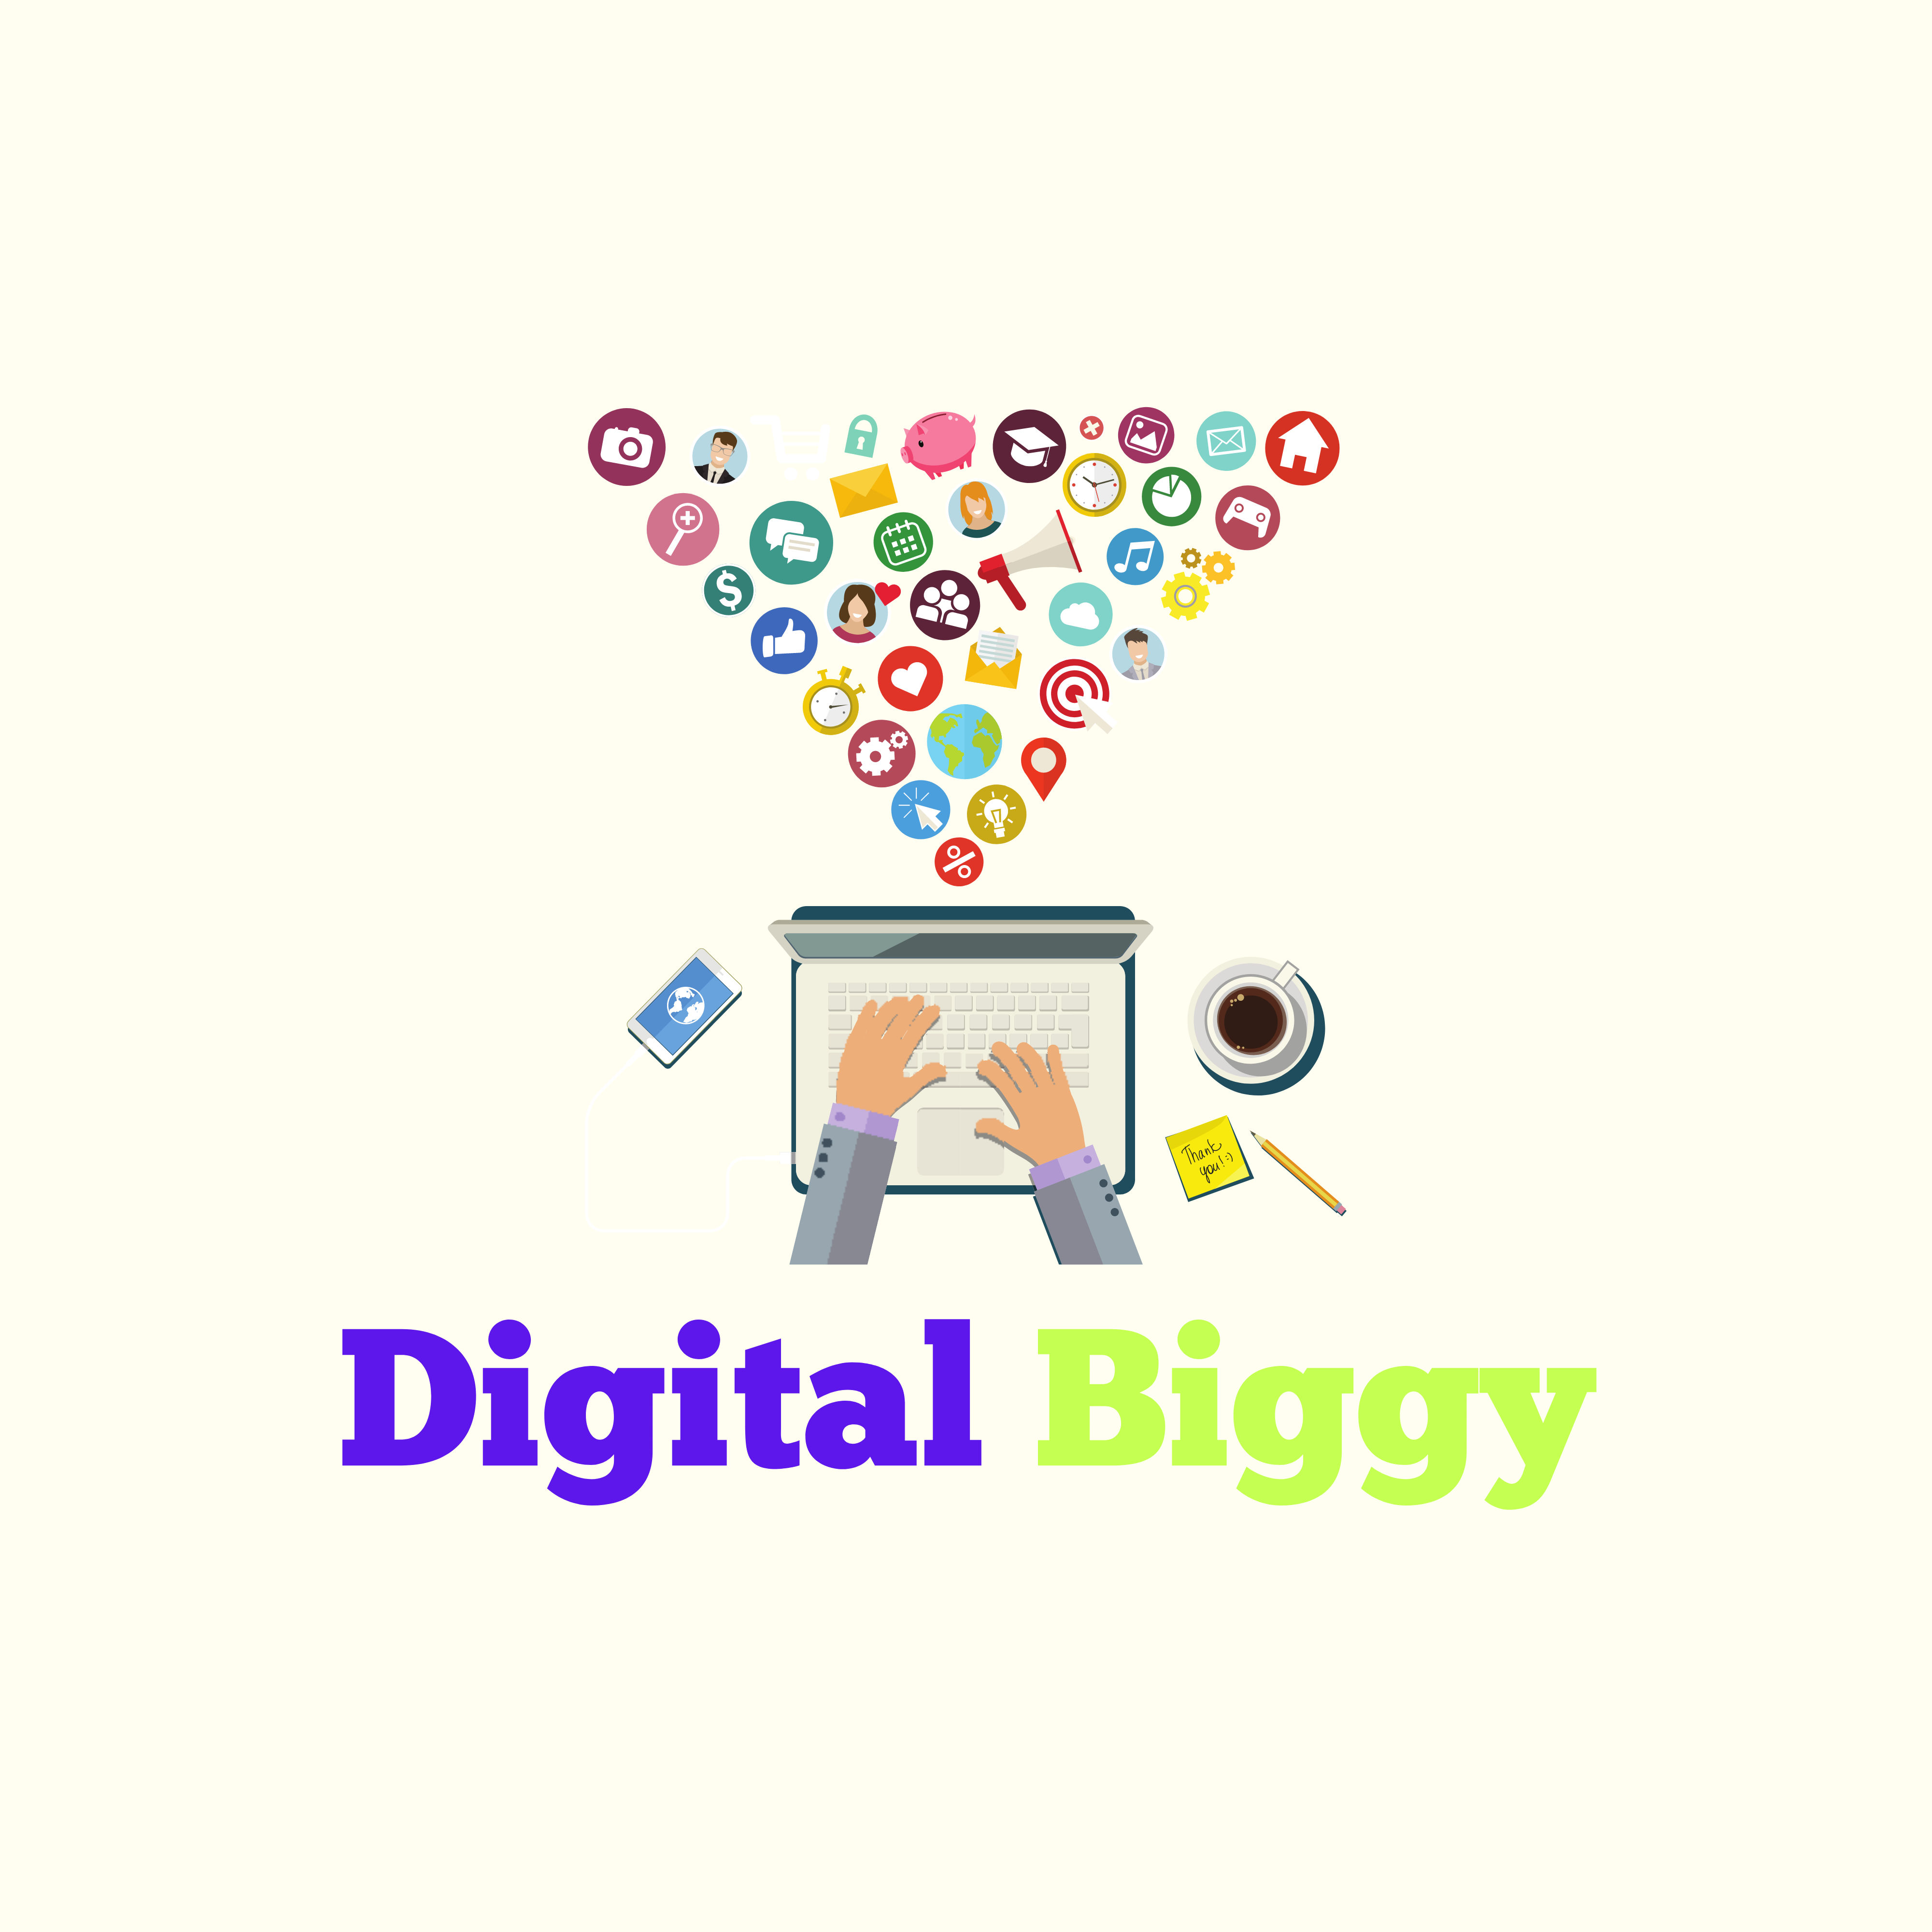 Digital Biggy